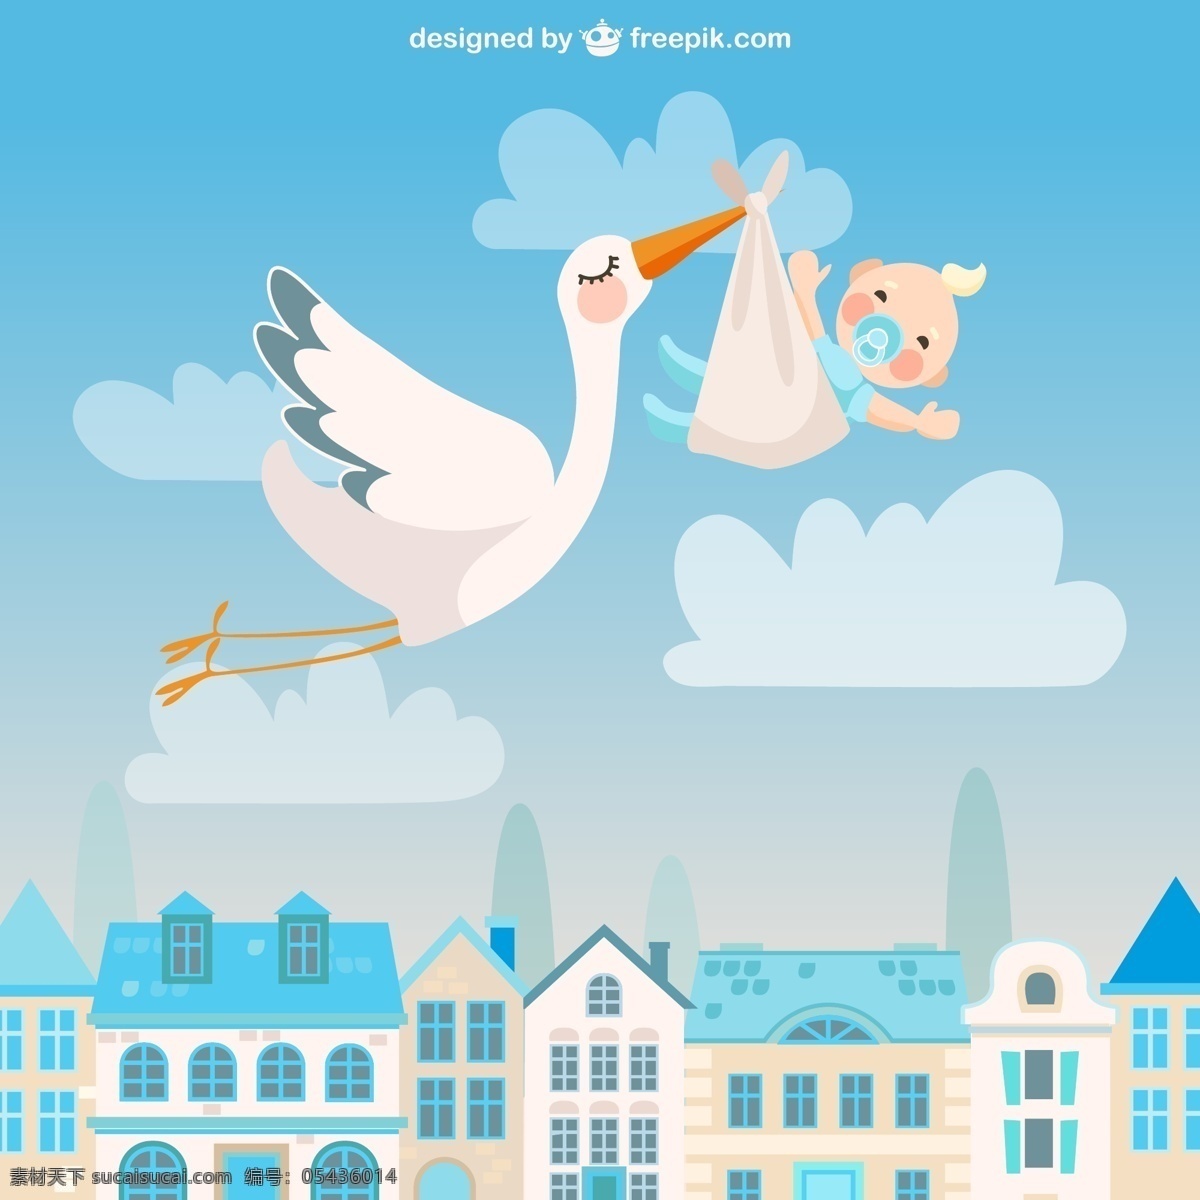 送 子 鹤和 婴儿 插画 矢量 青色 天 天蓝色 蓝天 送子鹤 白鹤 卡通 房子